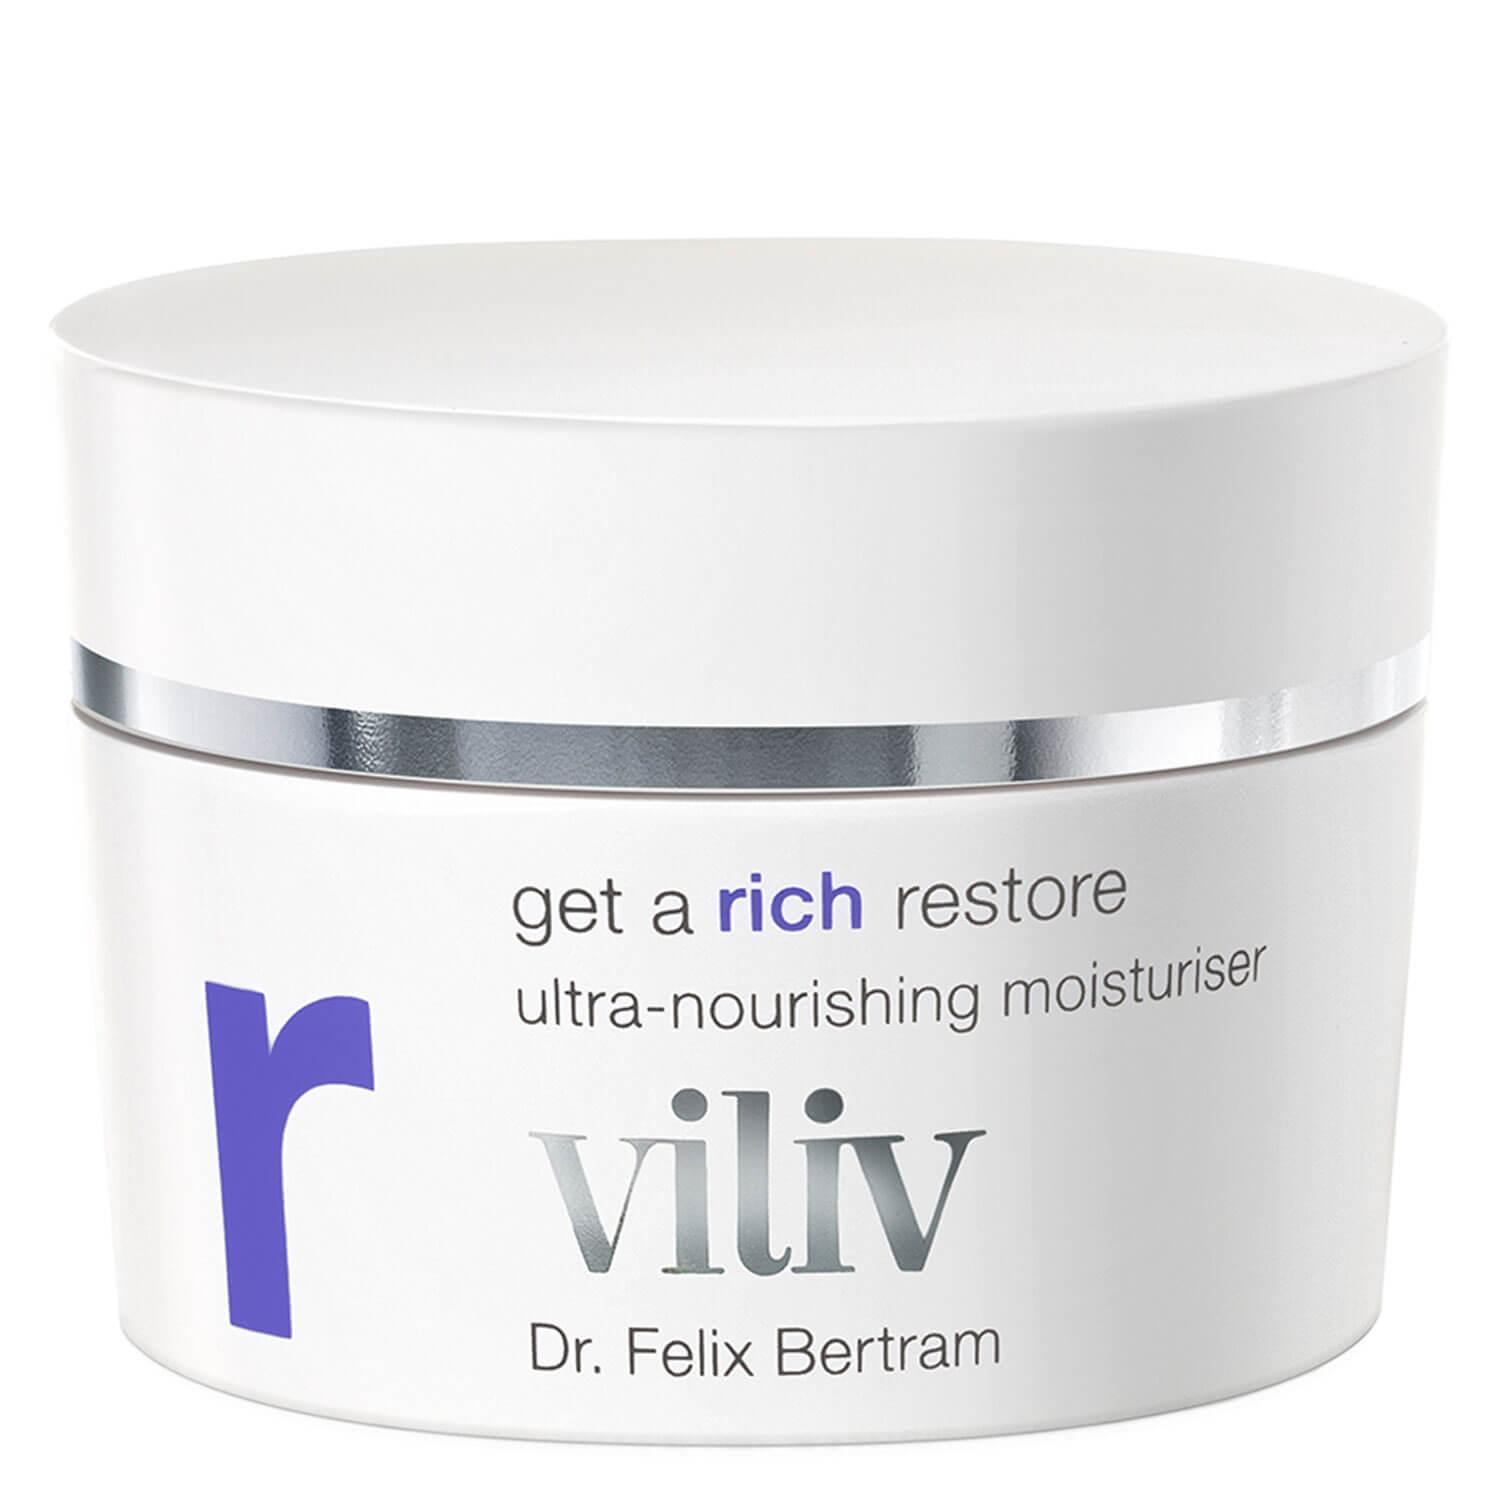 viliv - get a rich restore ultra-nourishing moisturiser